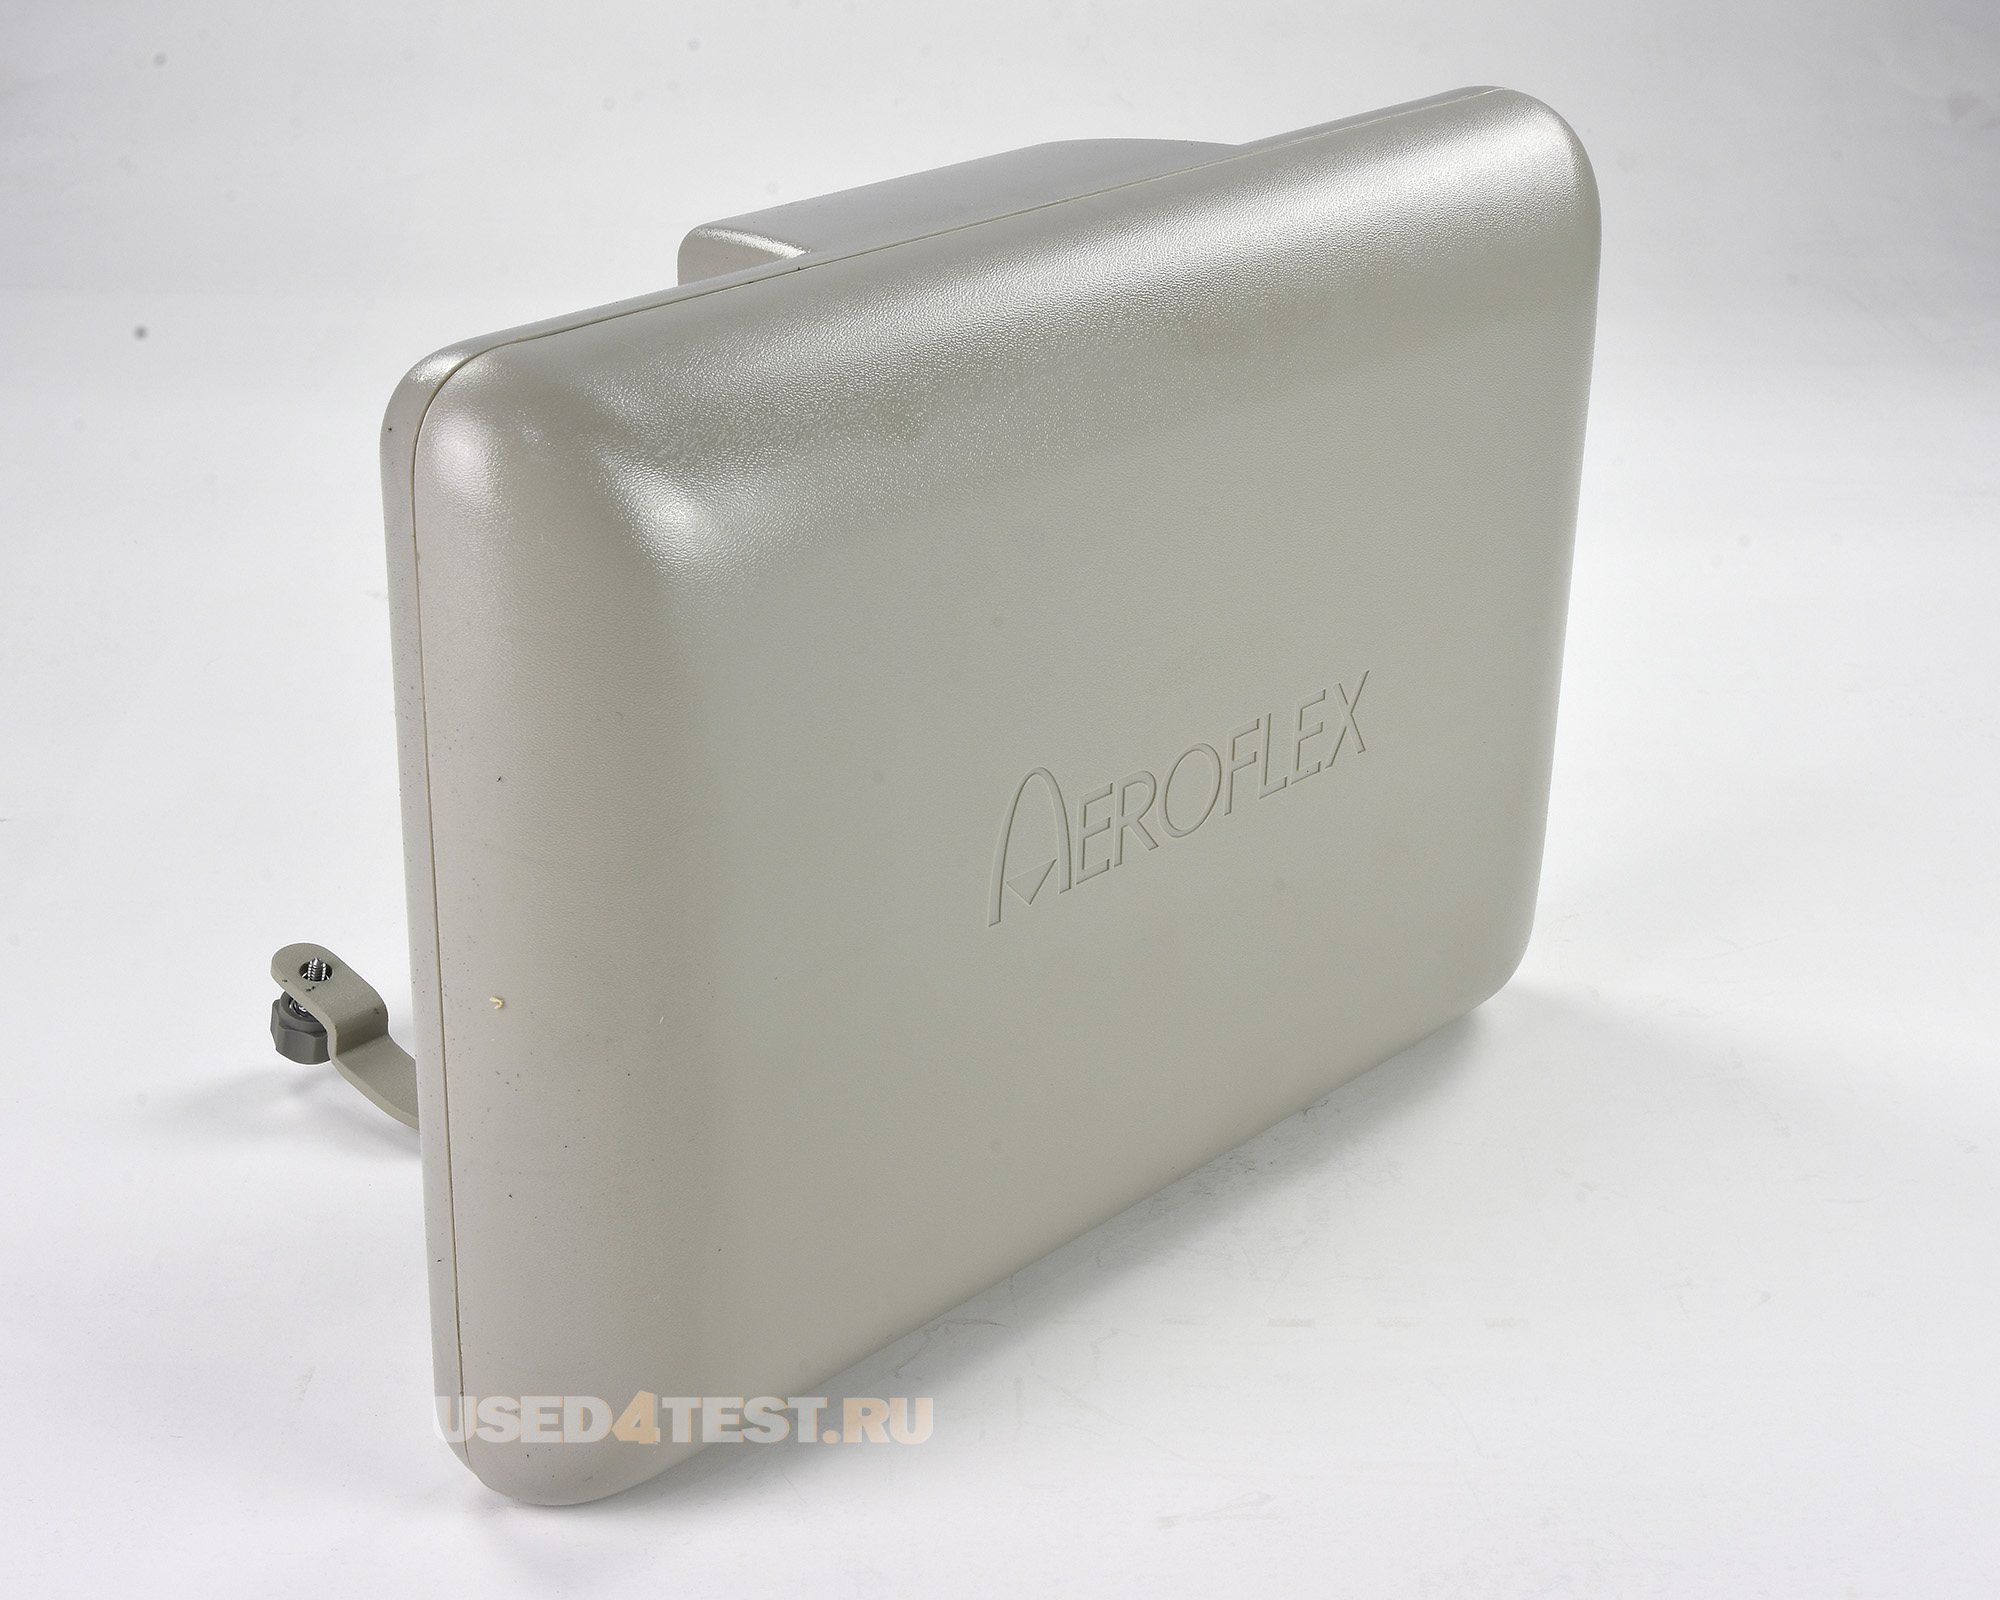 Комплекс Aeroflex IFR 6000 для наземного тестирования транспондеров/DME/TCAS
